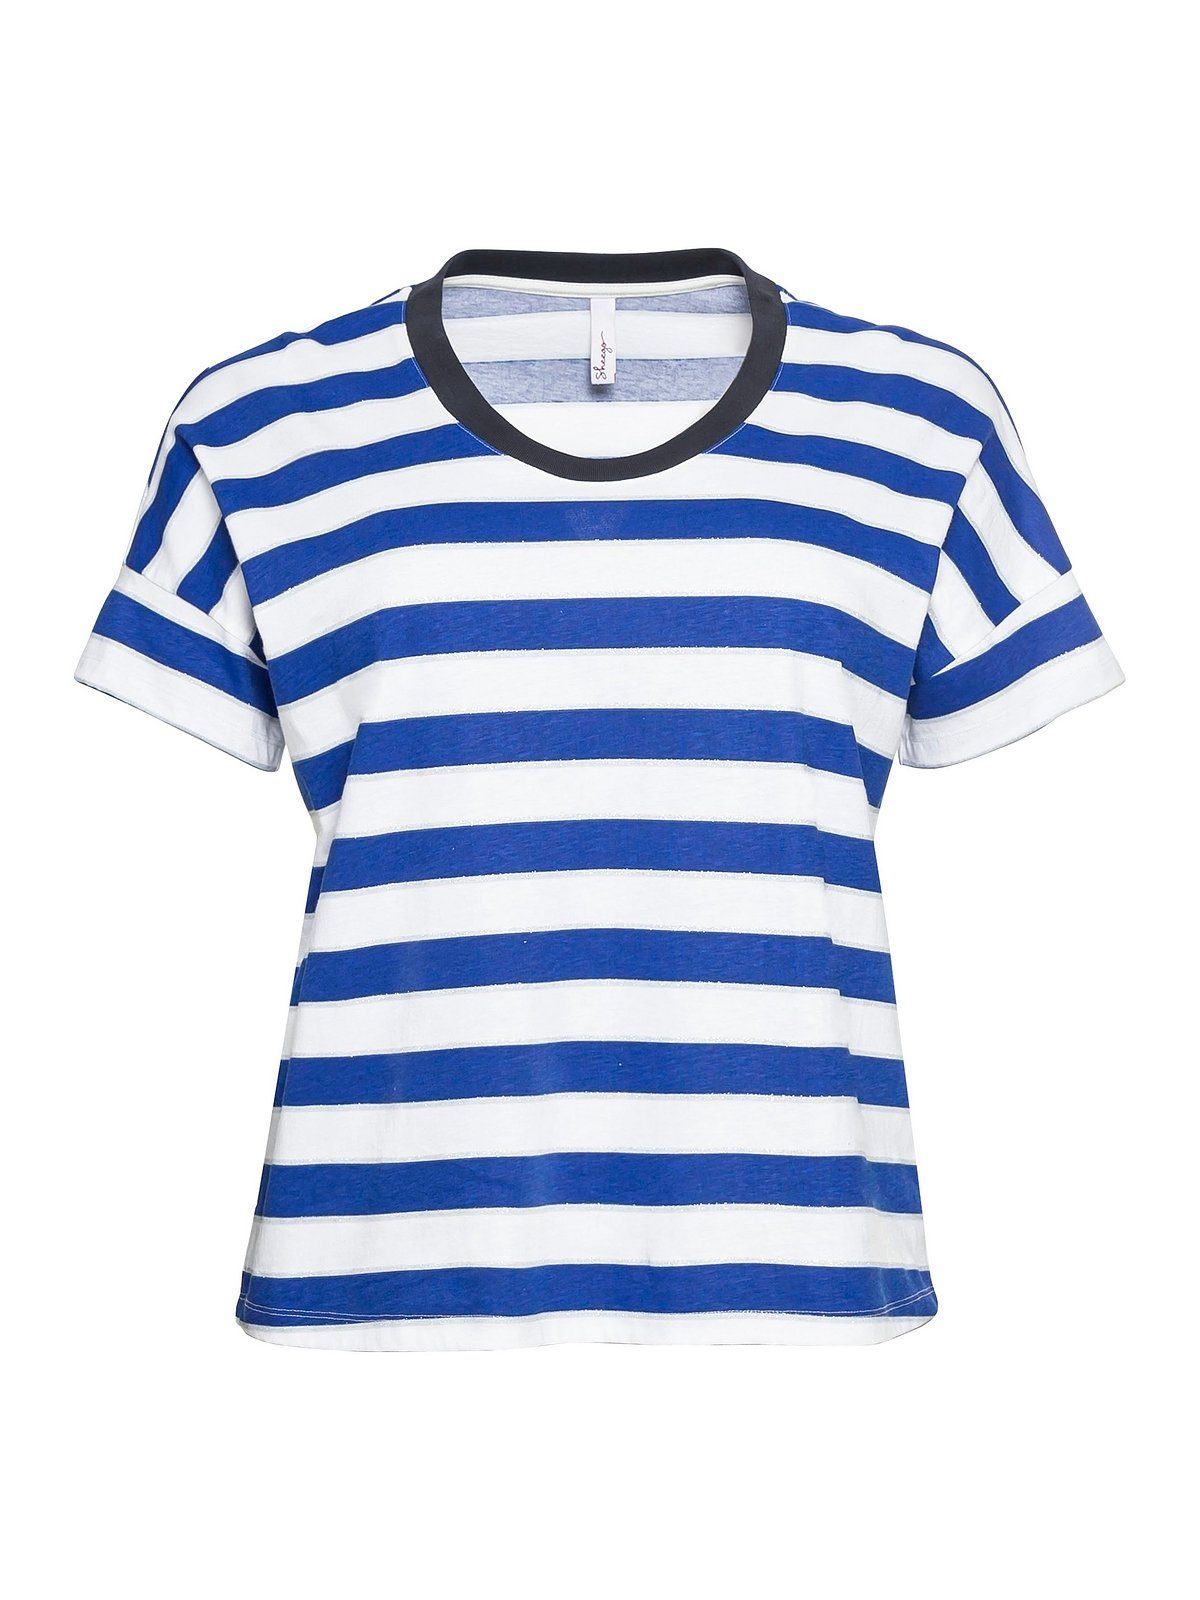 Sheego in mit Größen Große Glitzergarn, royalblau-weiß T-Shirt Oversize-Form